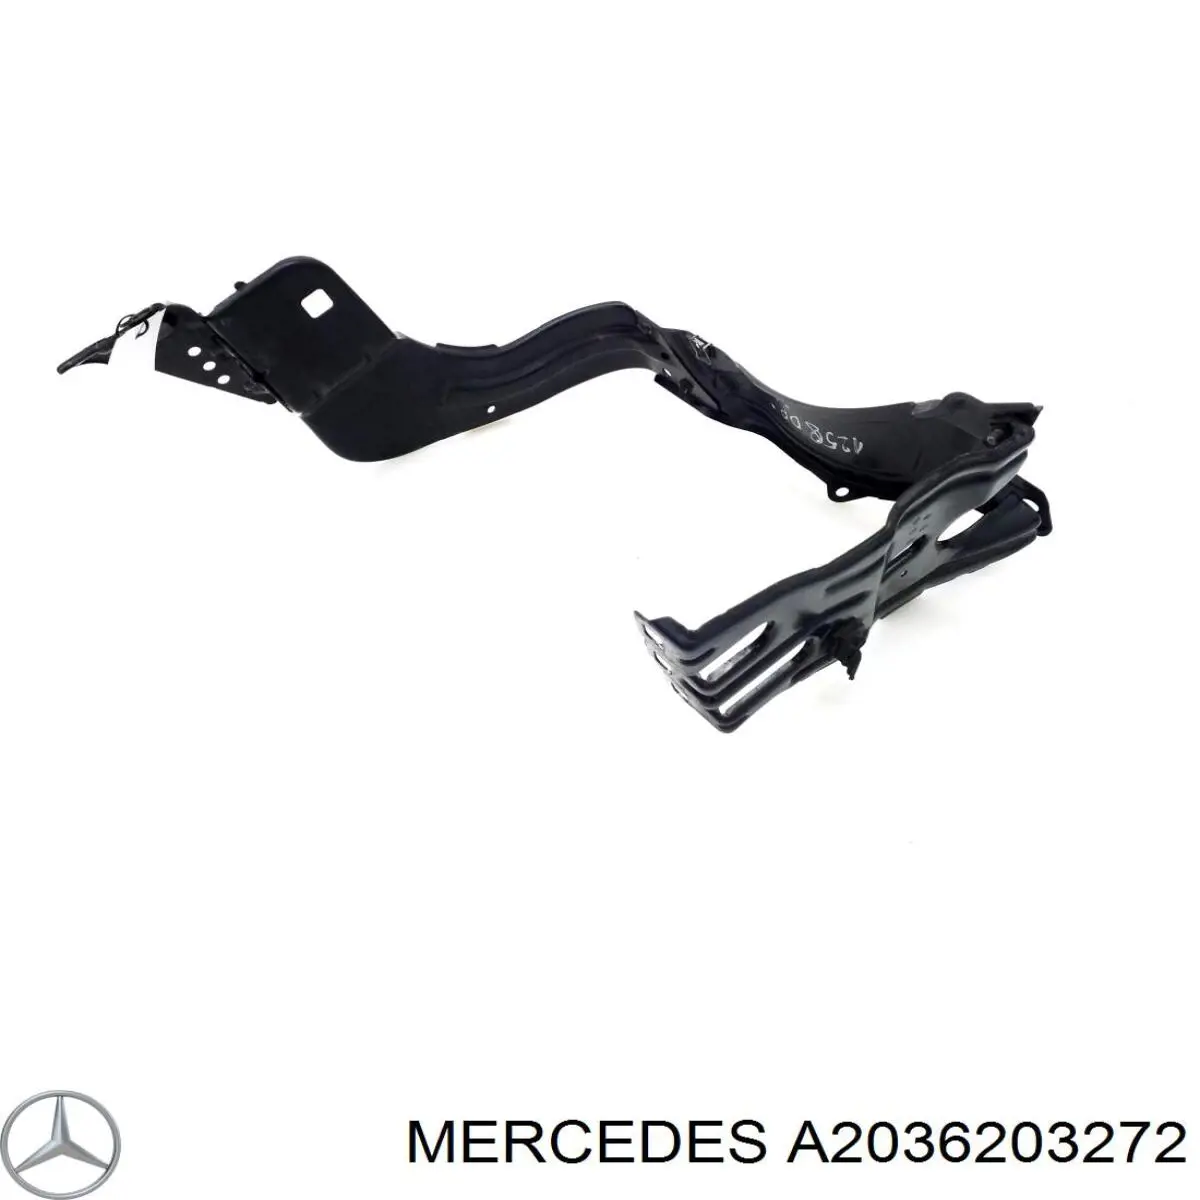 A2036203272 Mercedes суппорт радиатора правый (монтажная панель крепления фар)